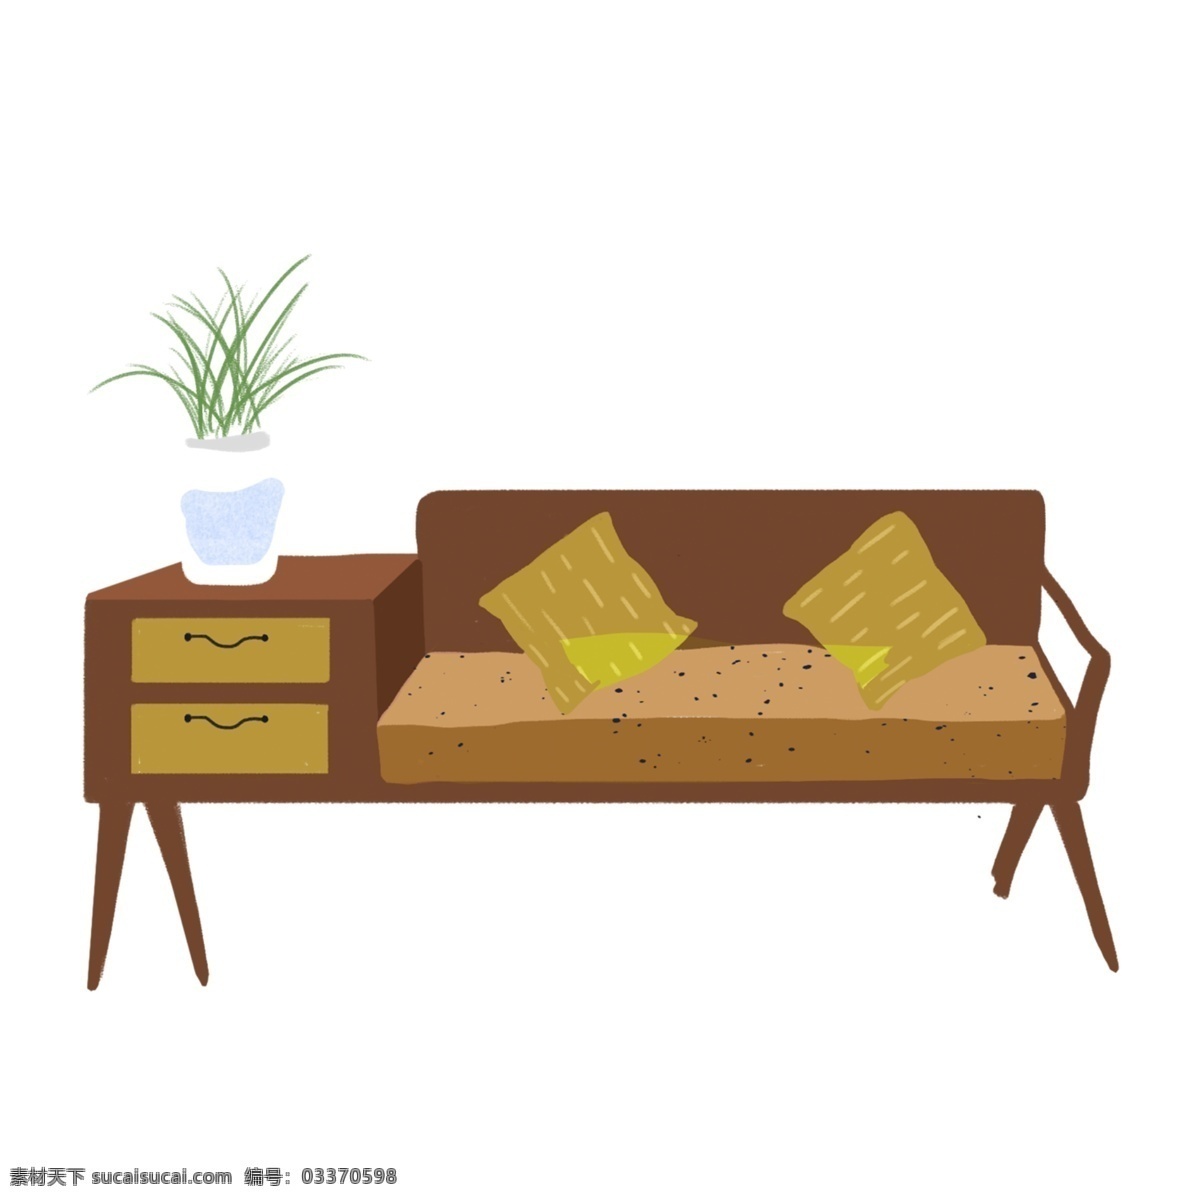 手绘 卡通 家居 沙发 植物 休闲 创意 地毯 房间 时尚 深夜 相片 窗户 舒服 靠枕